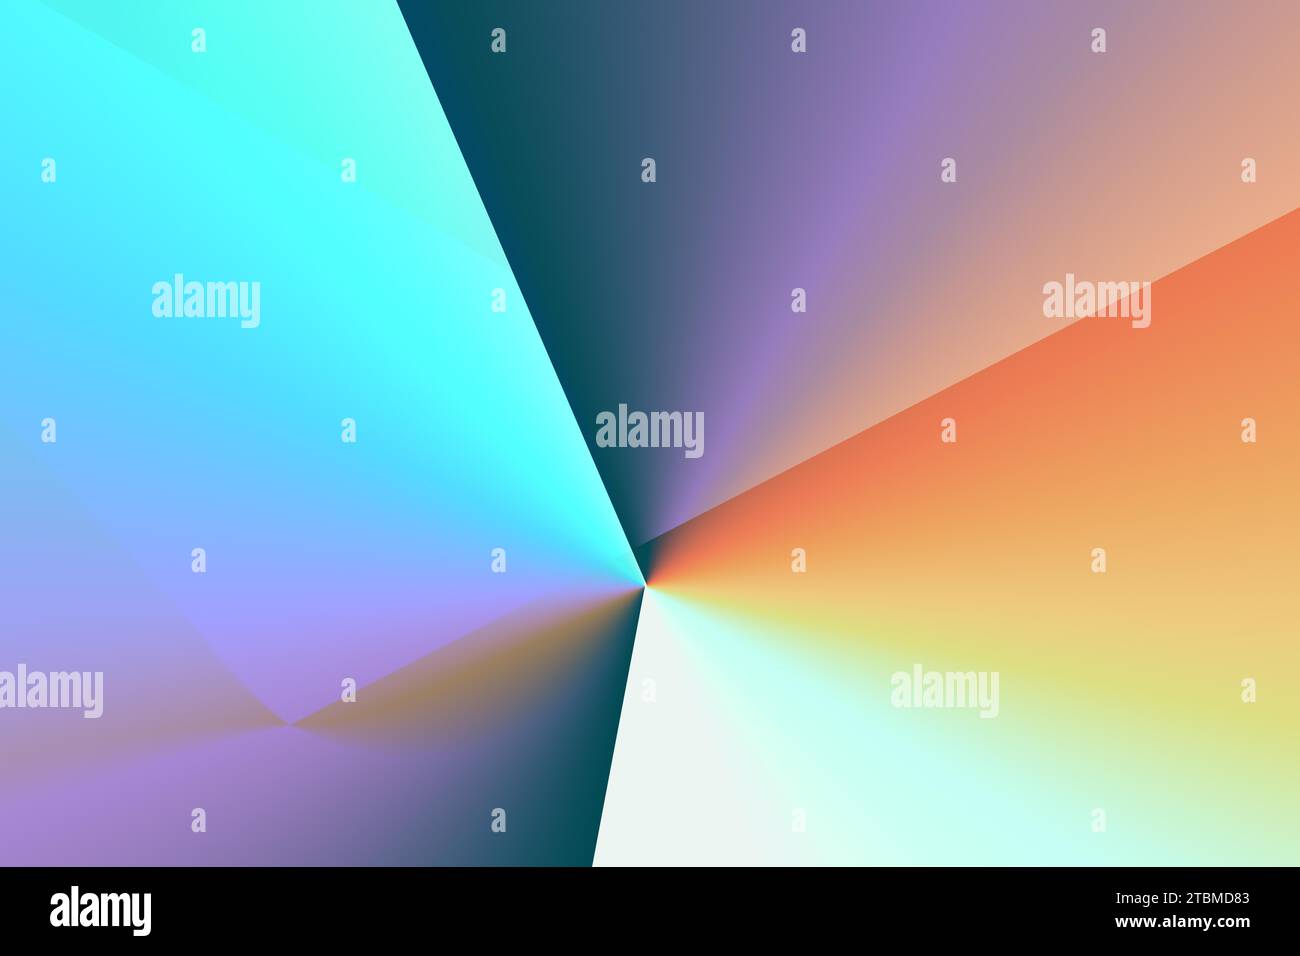 Elegante Farbabstufungen Tapete mit heller Regenbogenfarbe für Website, Banner Stockfoto